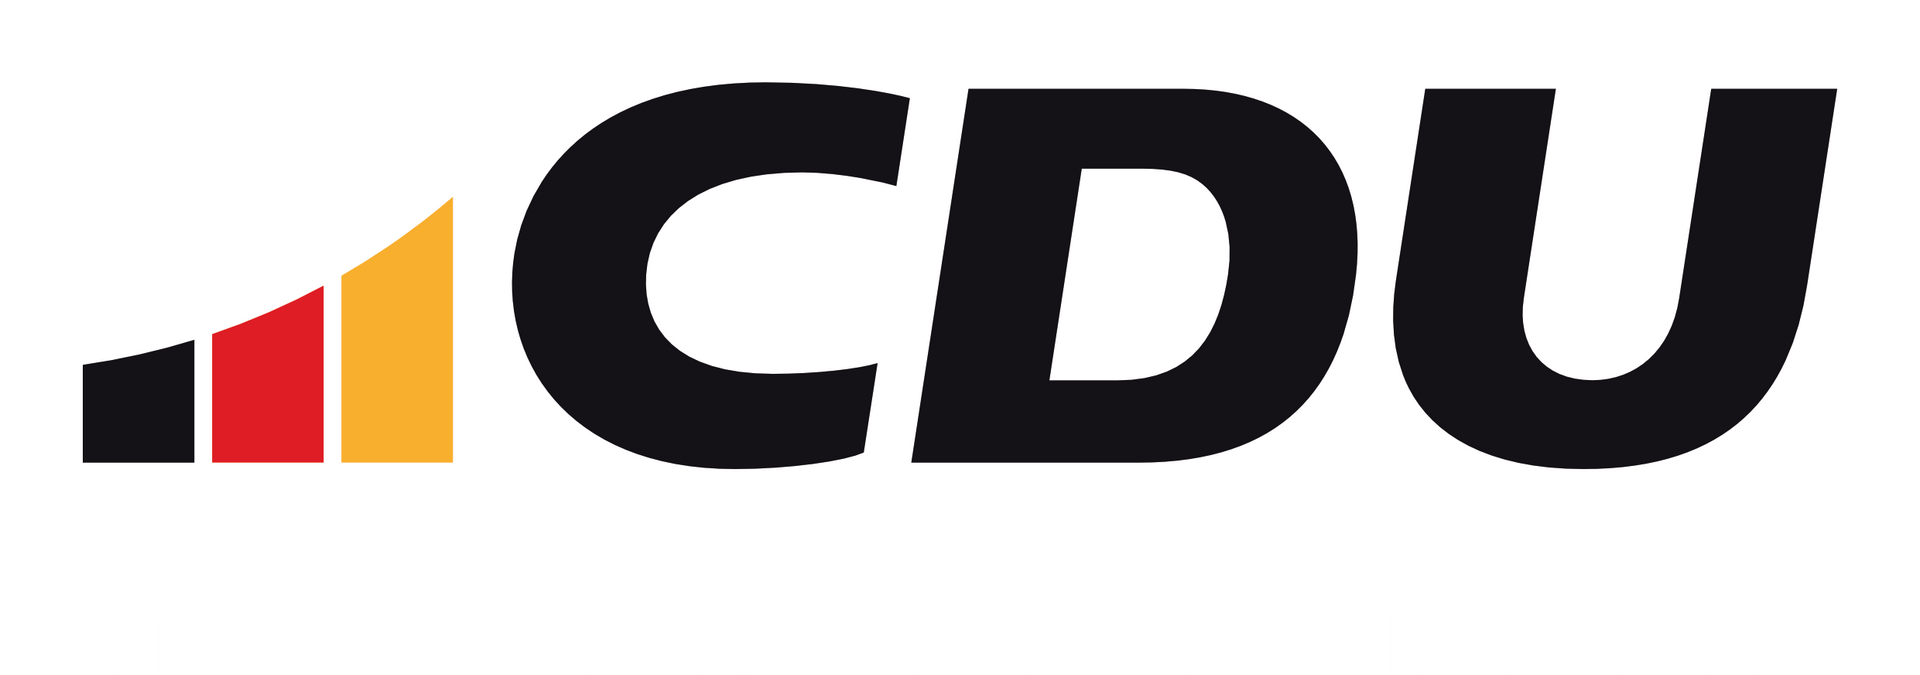 CDU Bad Soden am Taunus